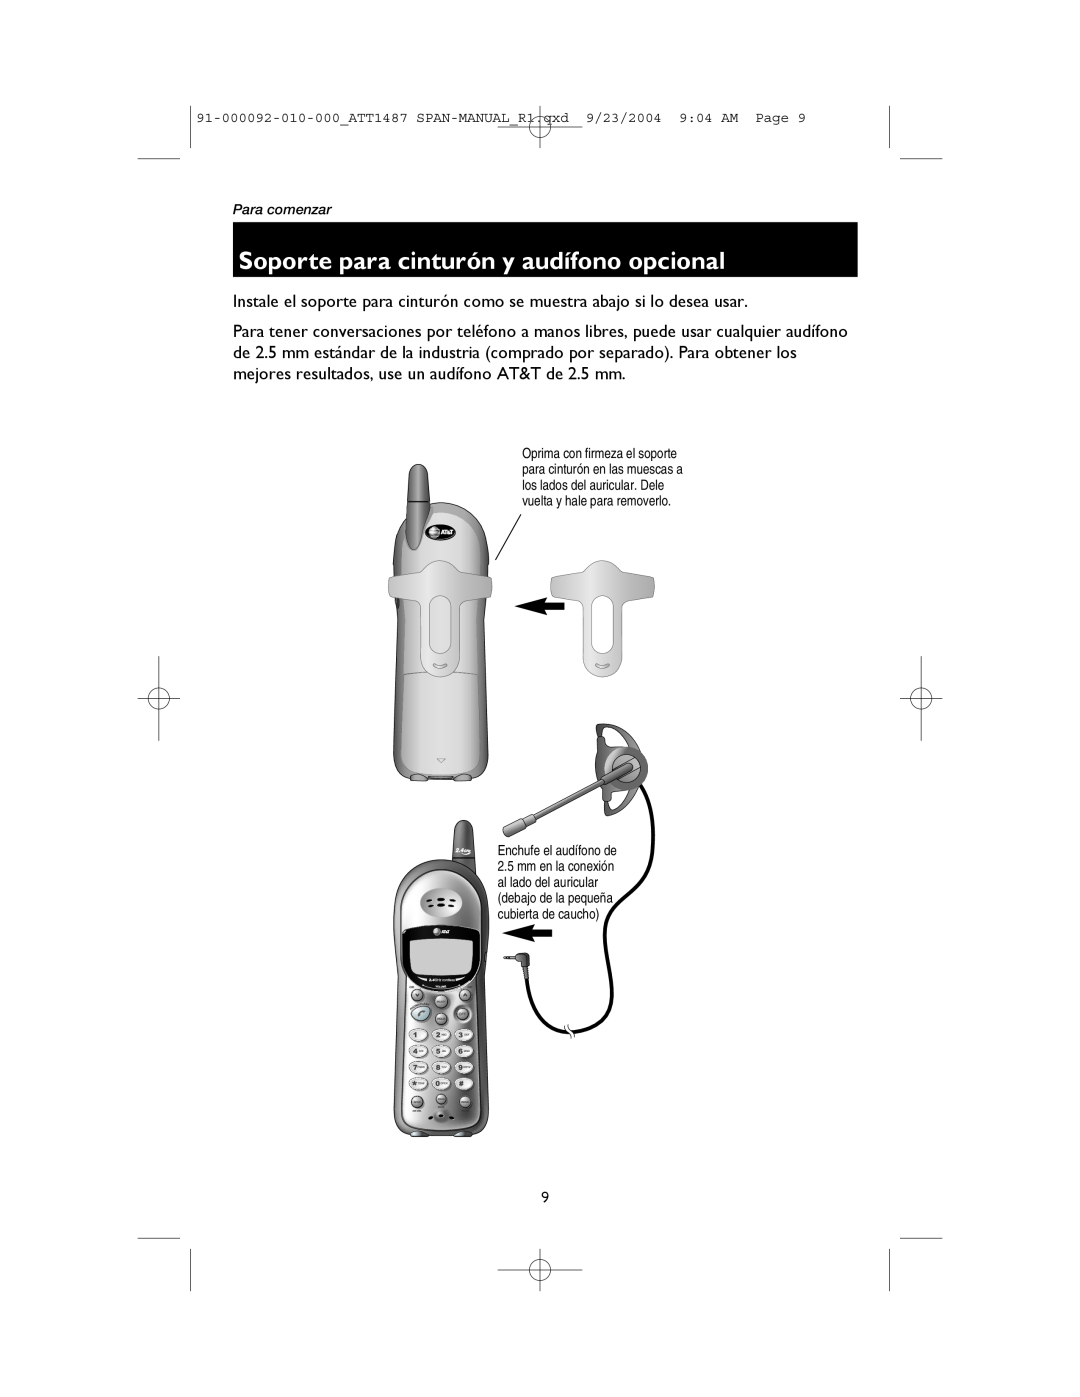 AT&T 1187, 1487 manual Soporte para cinturón y audífono opcional, Enchufe el audífono de 